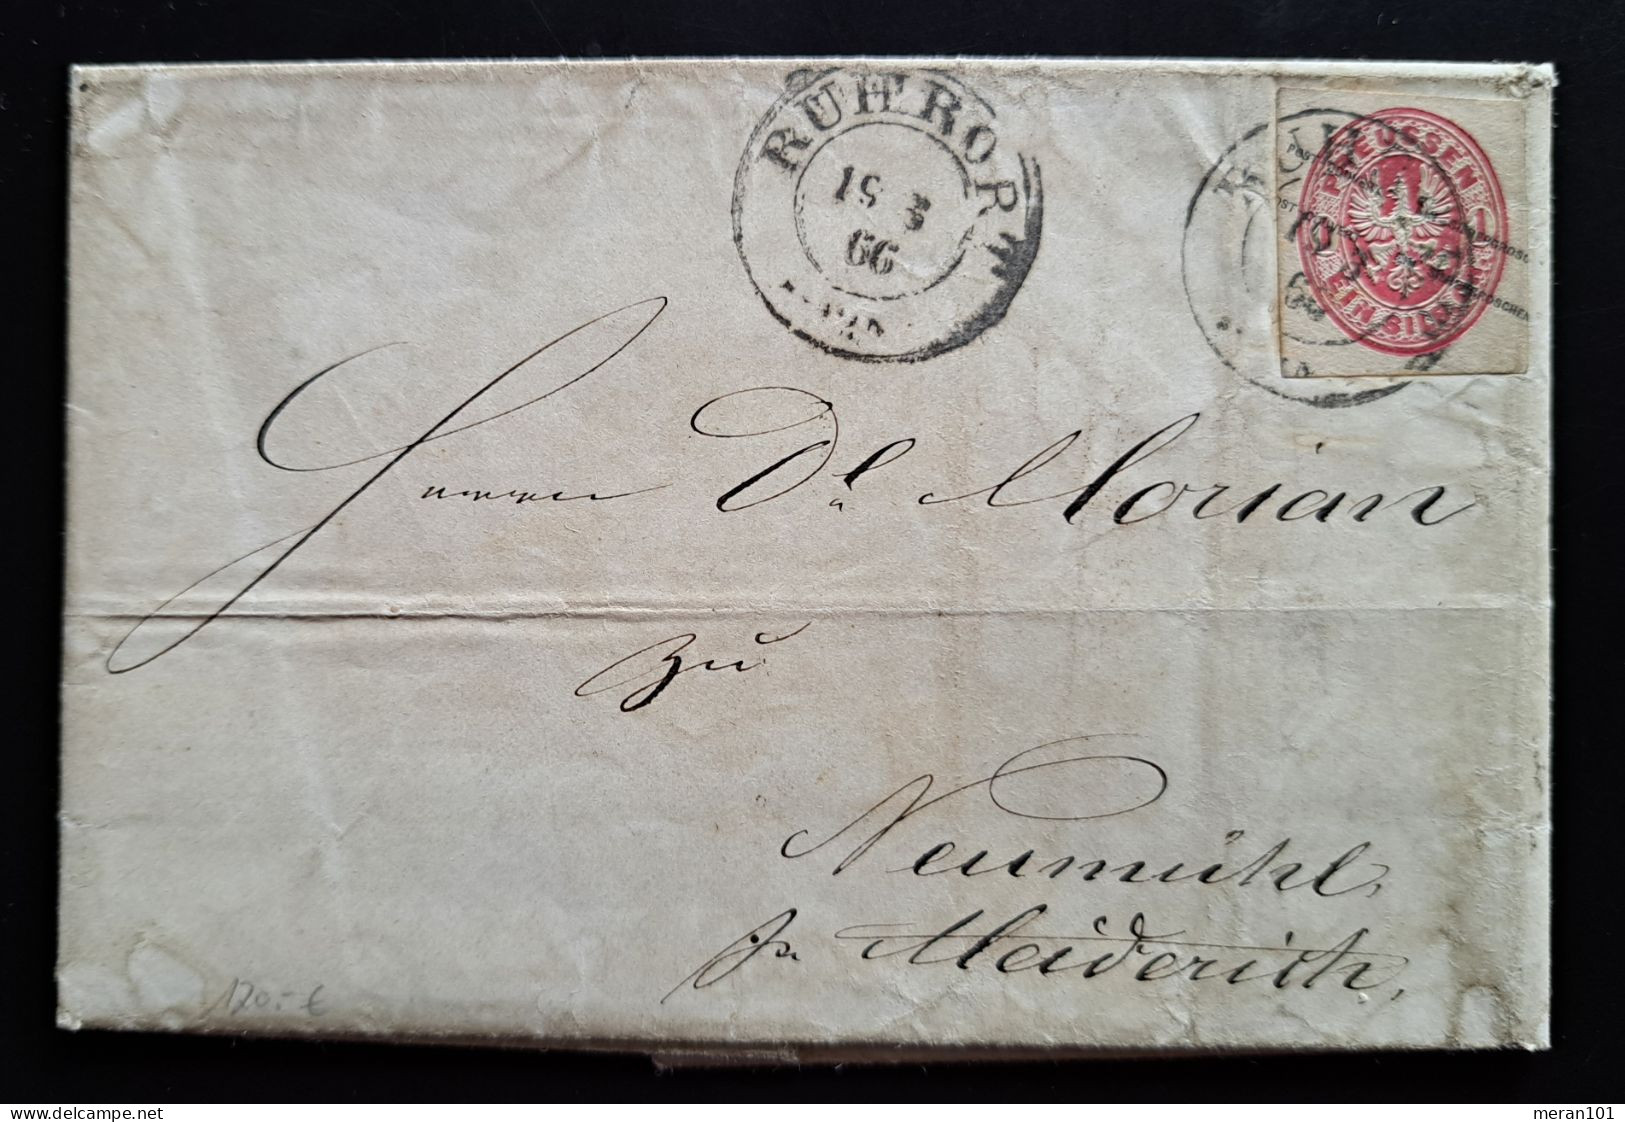 Preussen 1866, Brief Mit Inhalt ROHRORT, Ganzsachenausschnitt GAA15 - Covers & Documents